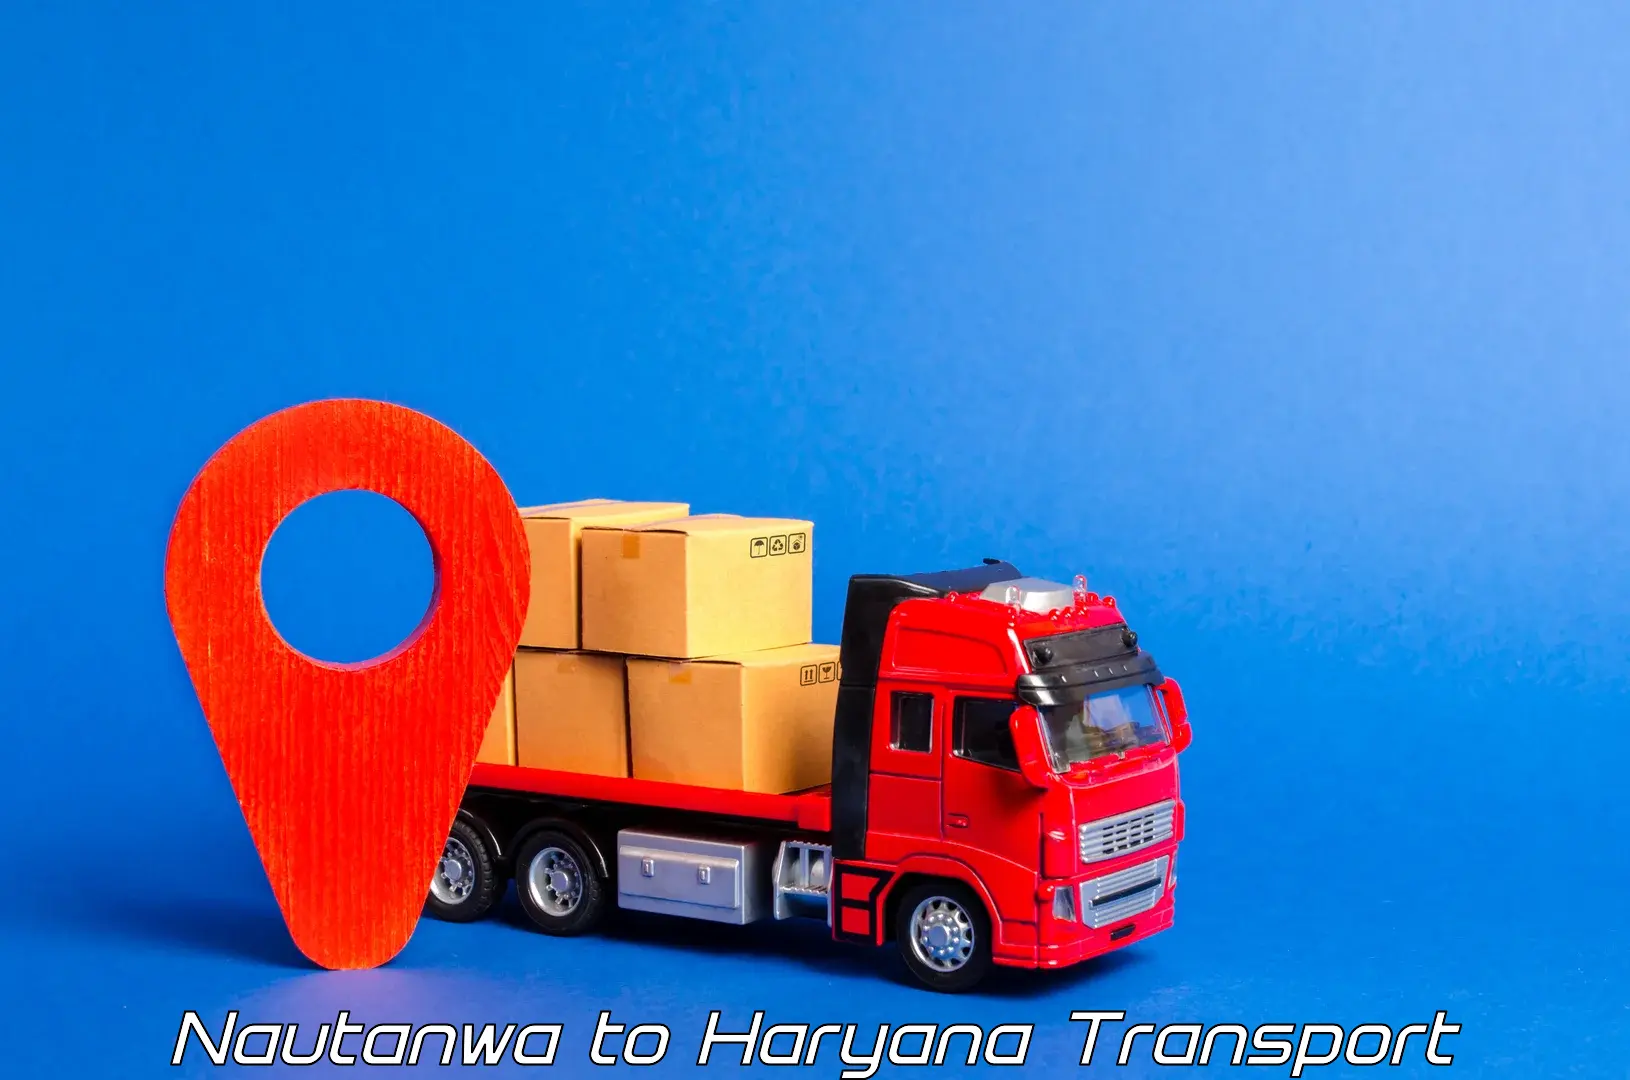 Land transport services in Nautanwa to NIT Kurukshetra